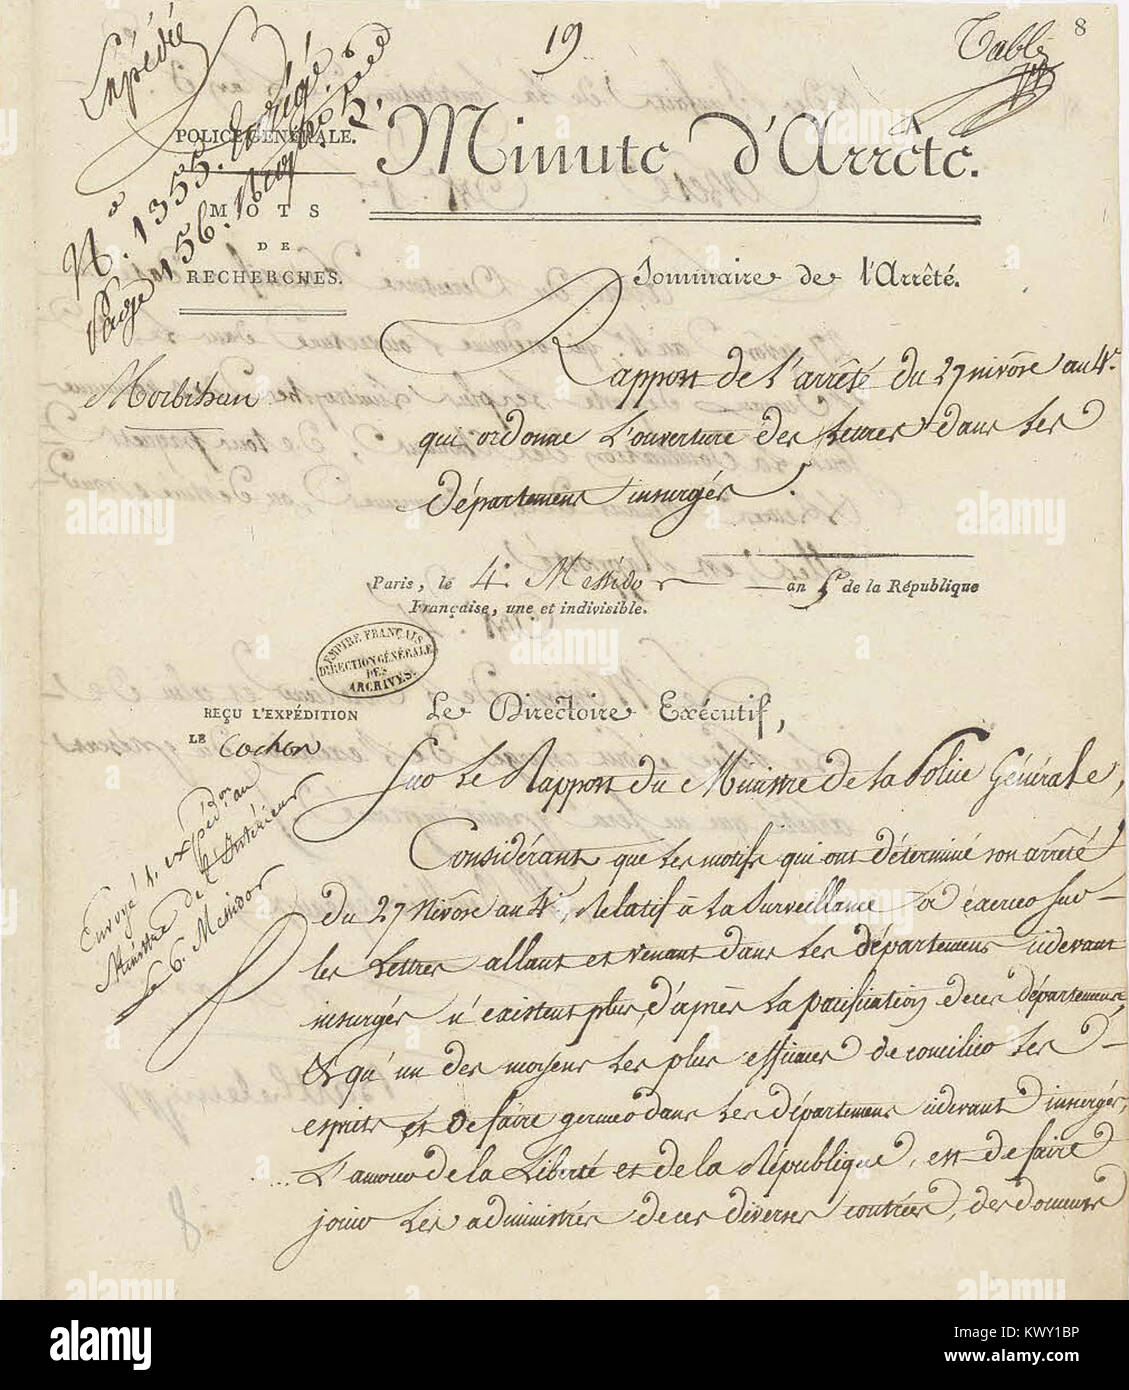 Minute d'arrêté du Directoire exécutif rapportant un Arrêté du 27 nivôse ein IV (17 Januar 1796) - Archives nationales-AF-III-454 - (1) Stockfoto